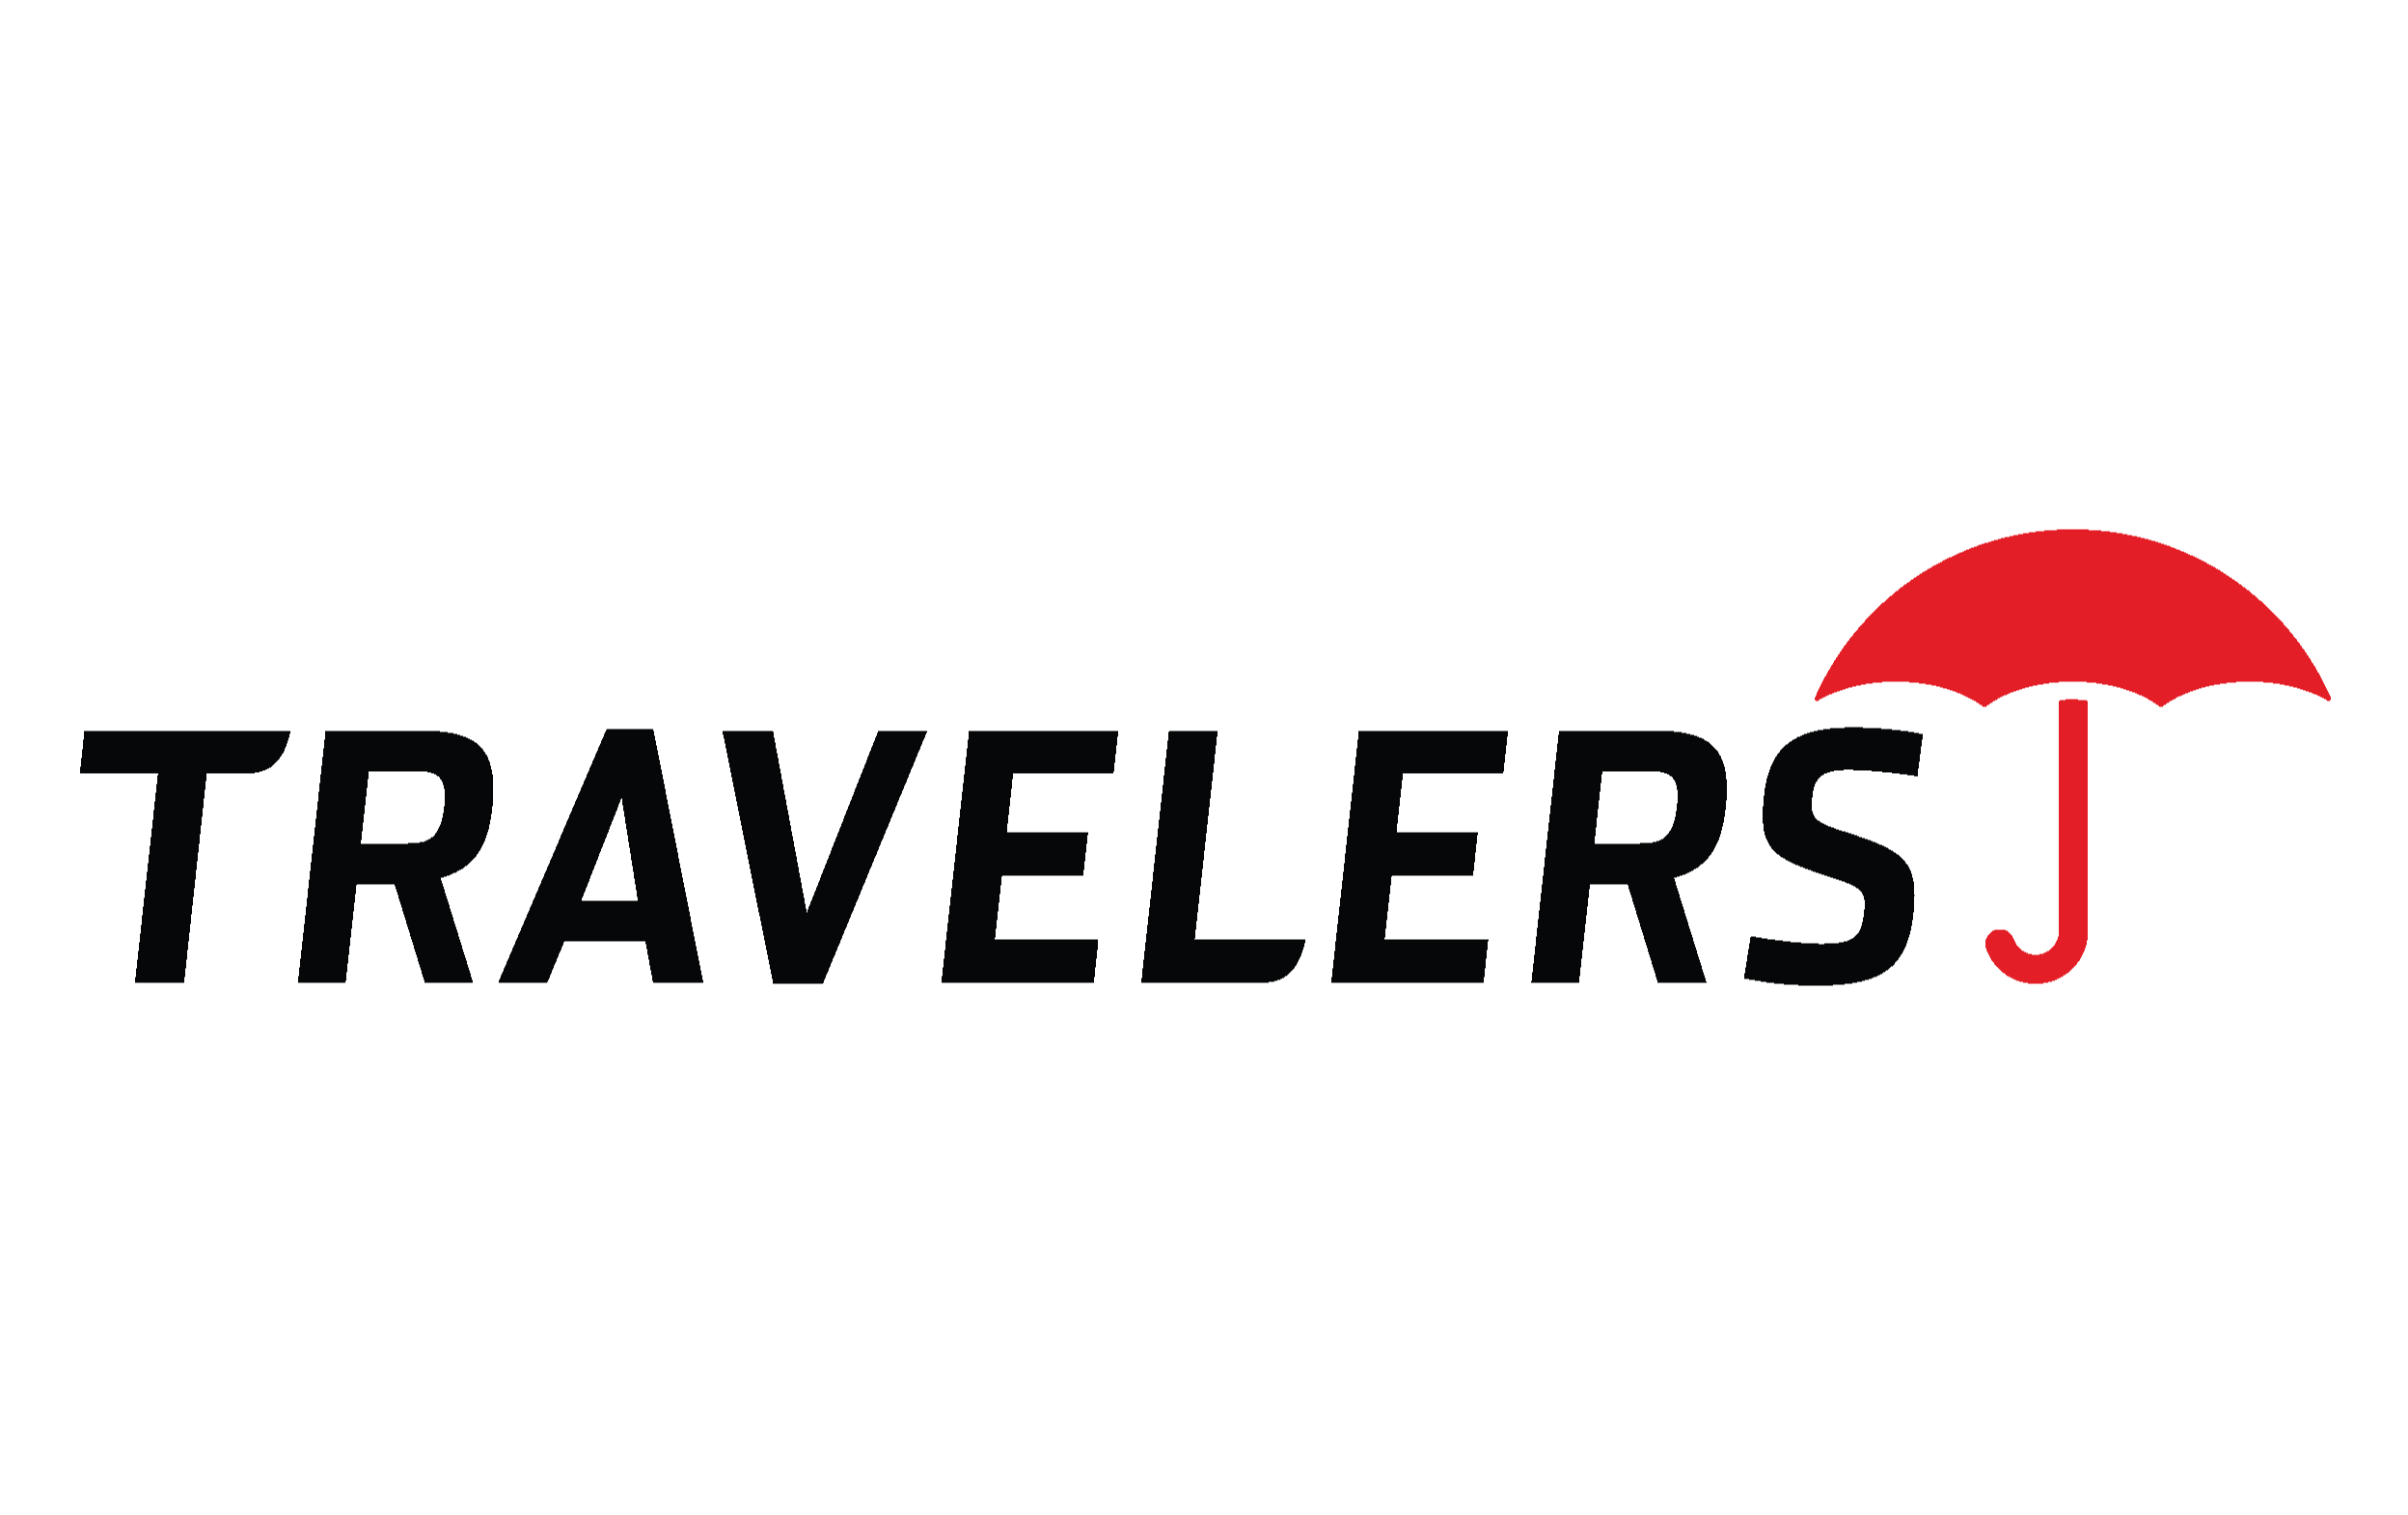 Traveleres Insurance